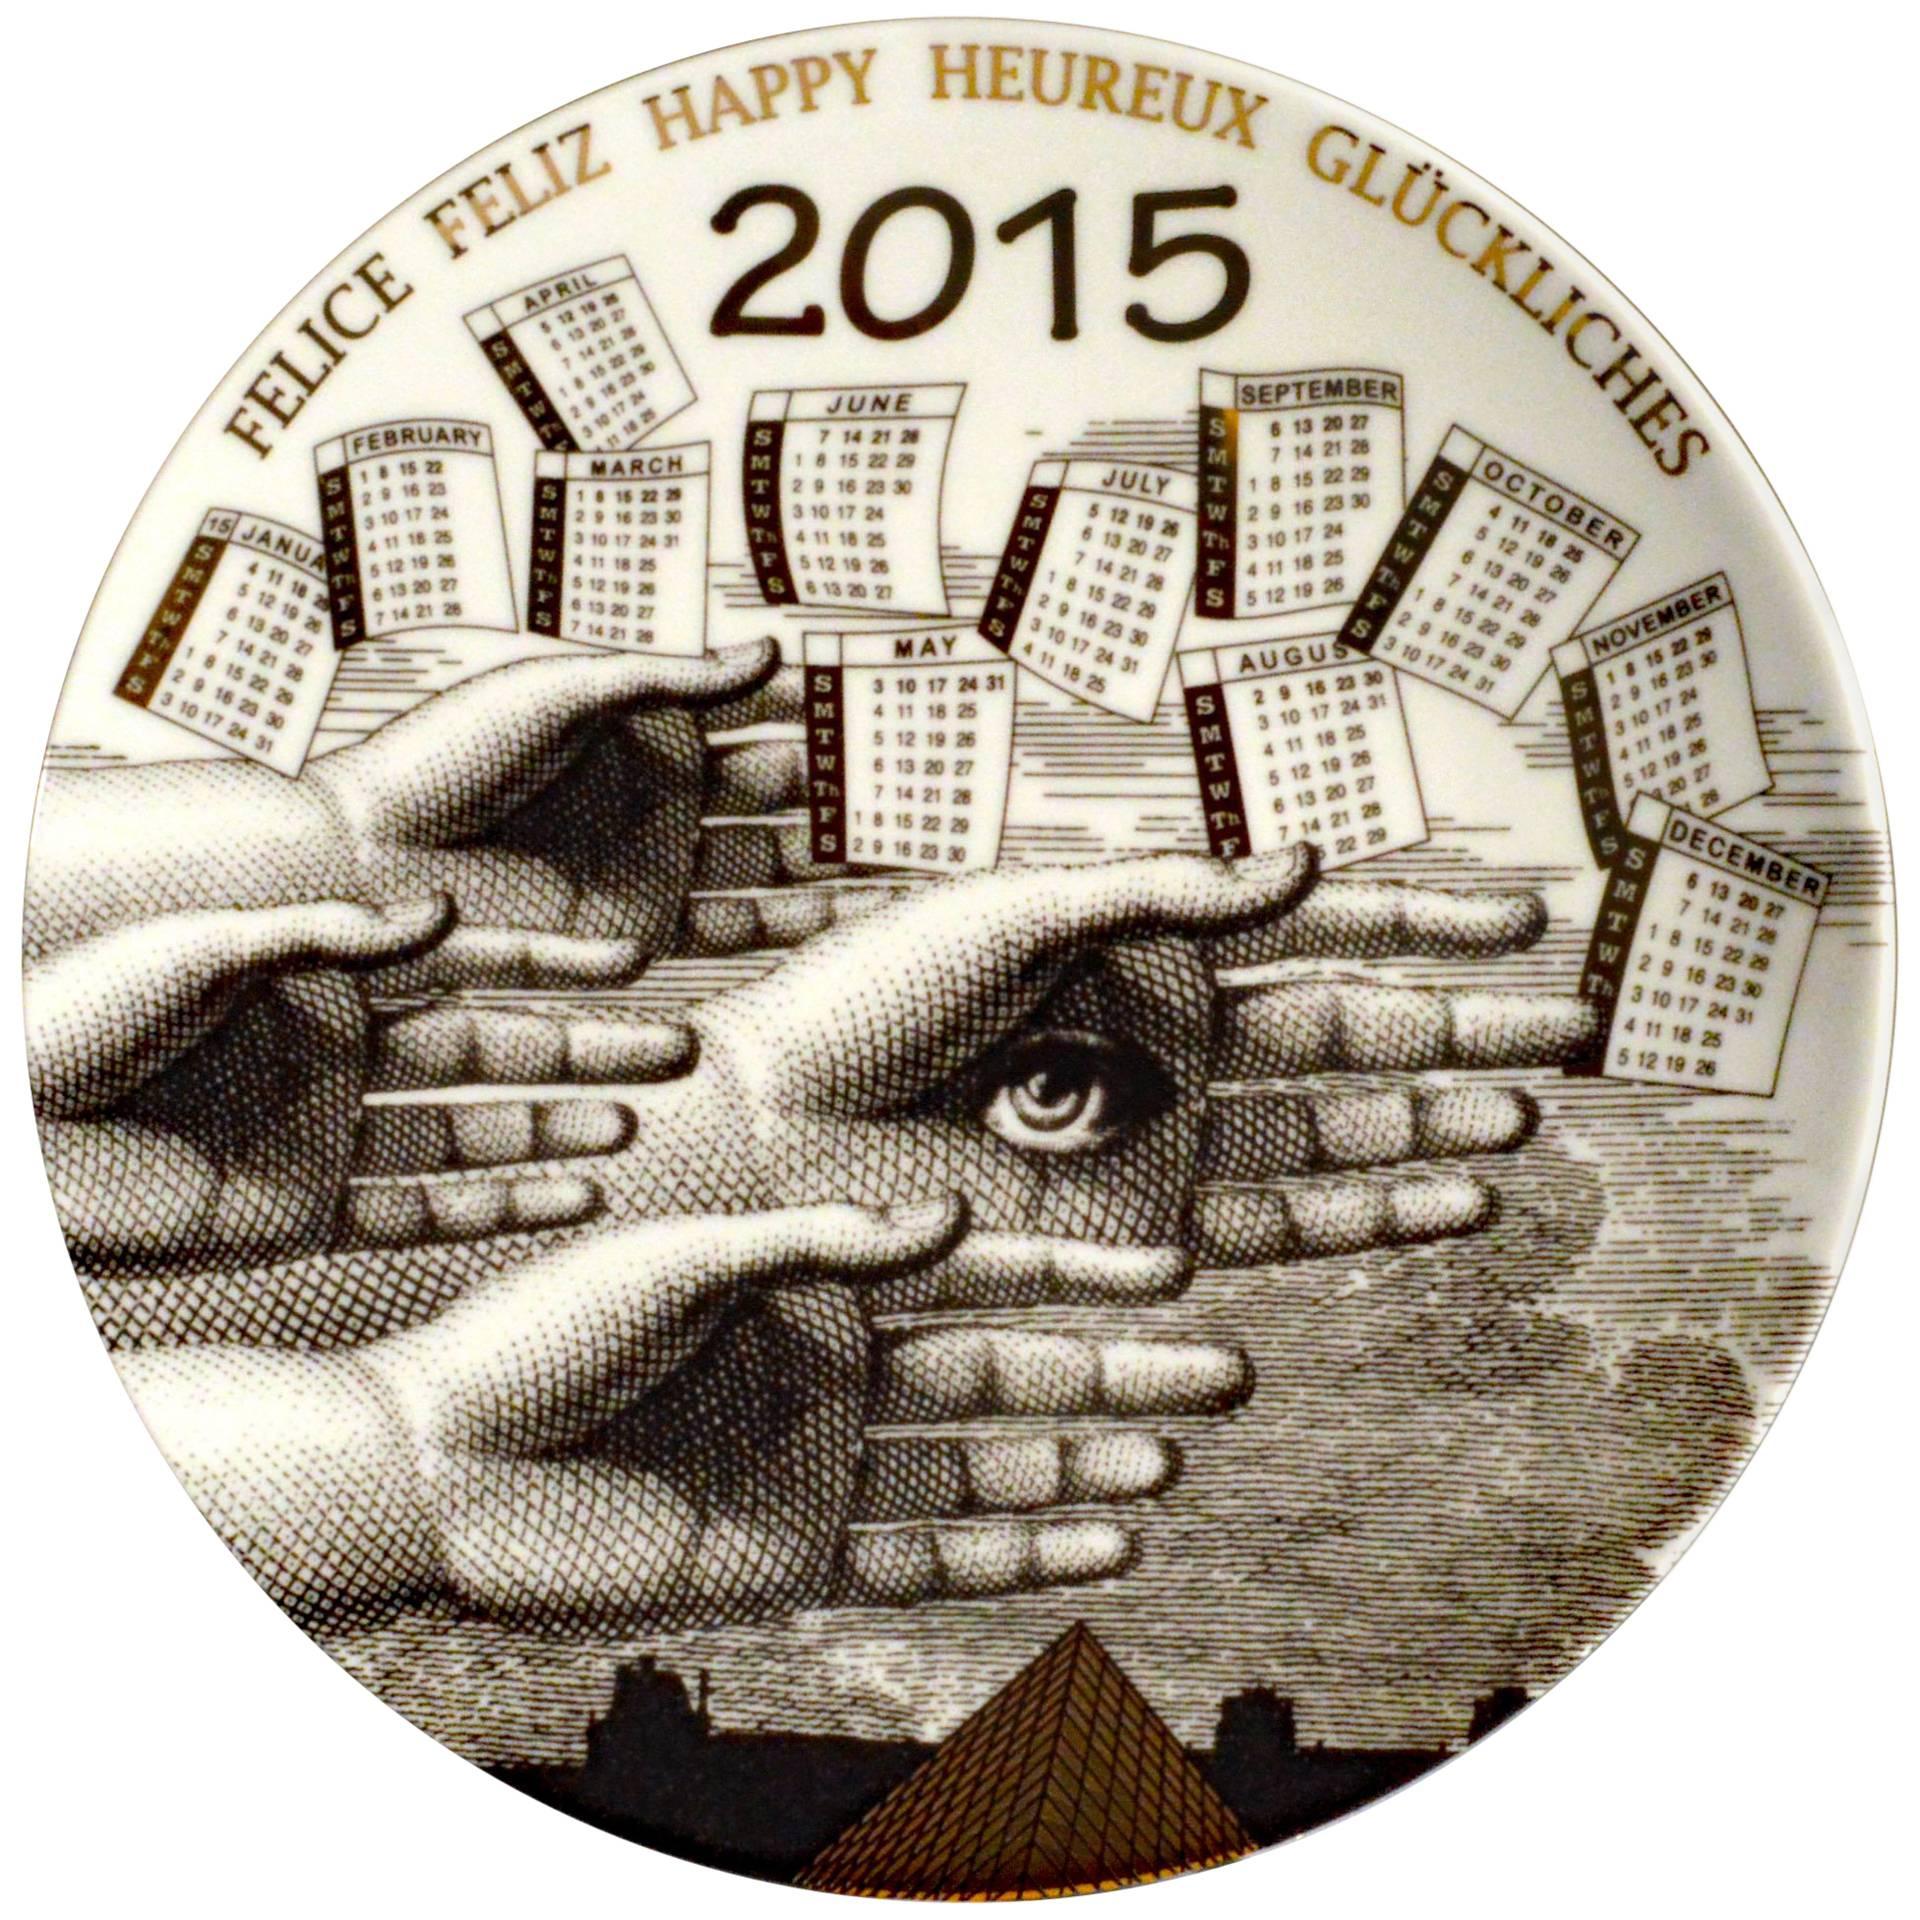 Barnaba Fornasetti Porcelain Calendar Plate 2015, Number 150 of 700 Made